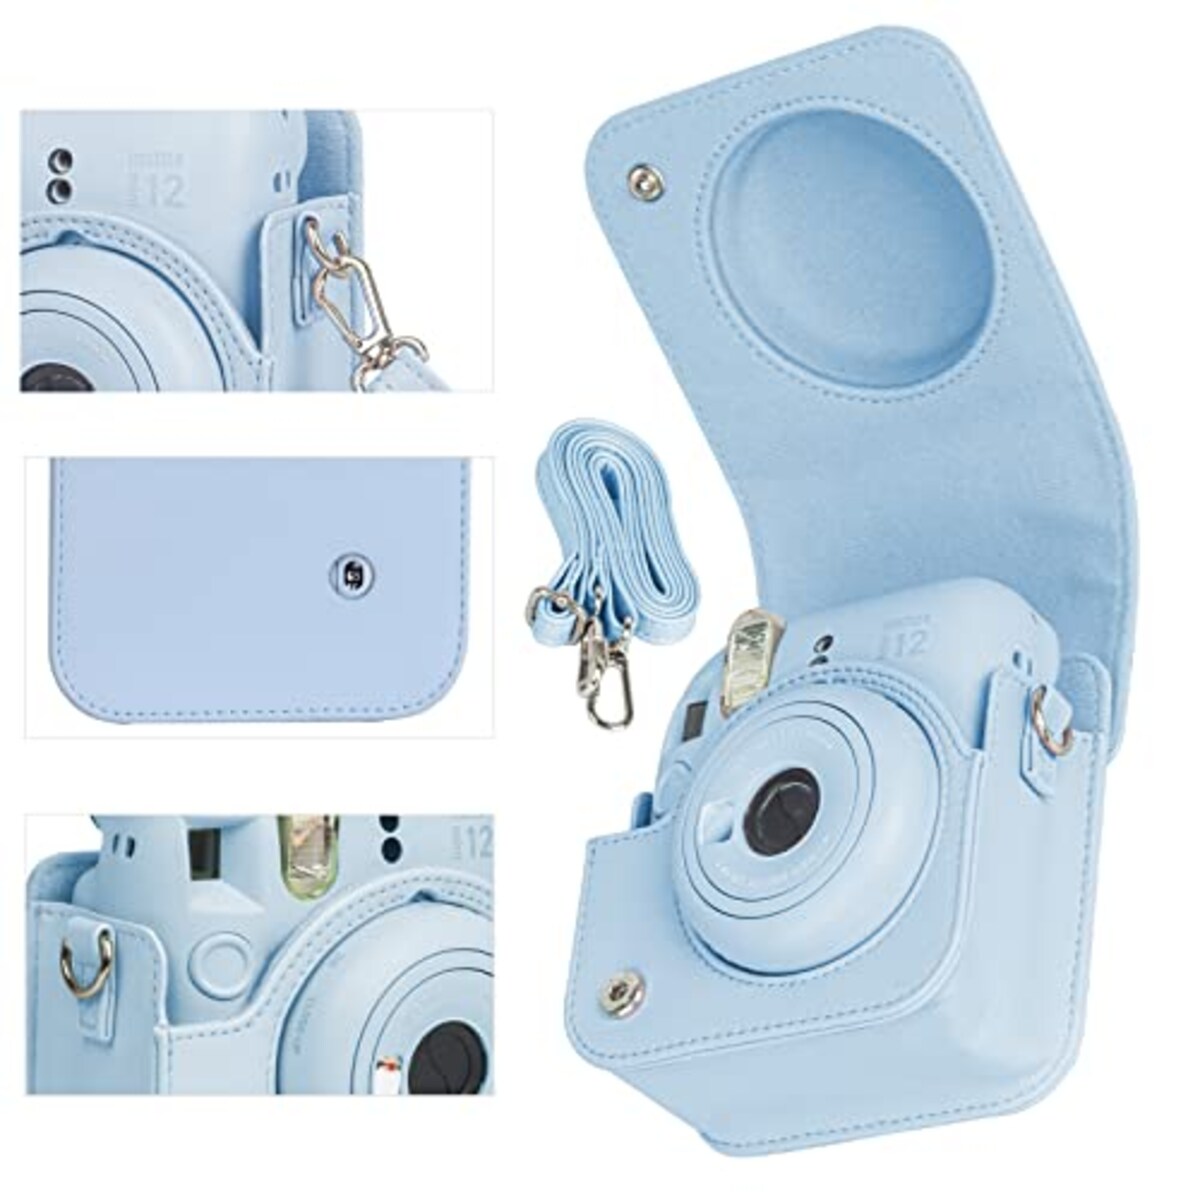  チェキケース instax mini 12用 カメラケース mini12 チェキ カバー Fujifilm チェキ ケース 新モデル 全面保護 傷つけ防止 携帯便利 ショルダーストラップ付き PUレザー (ブルー)画像2 